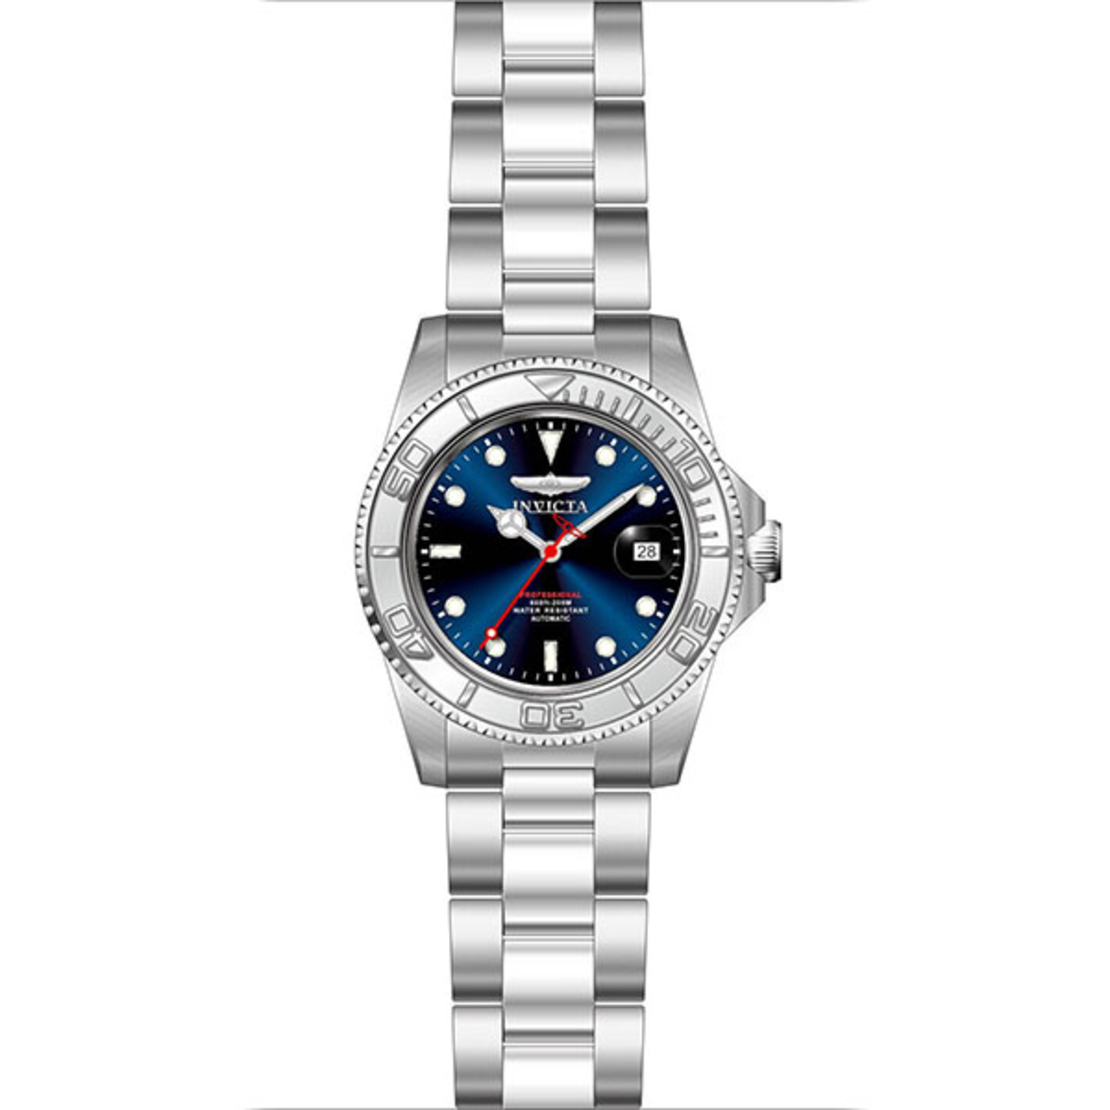 Мужские часы Invicta Pro Diver, модель 36746